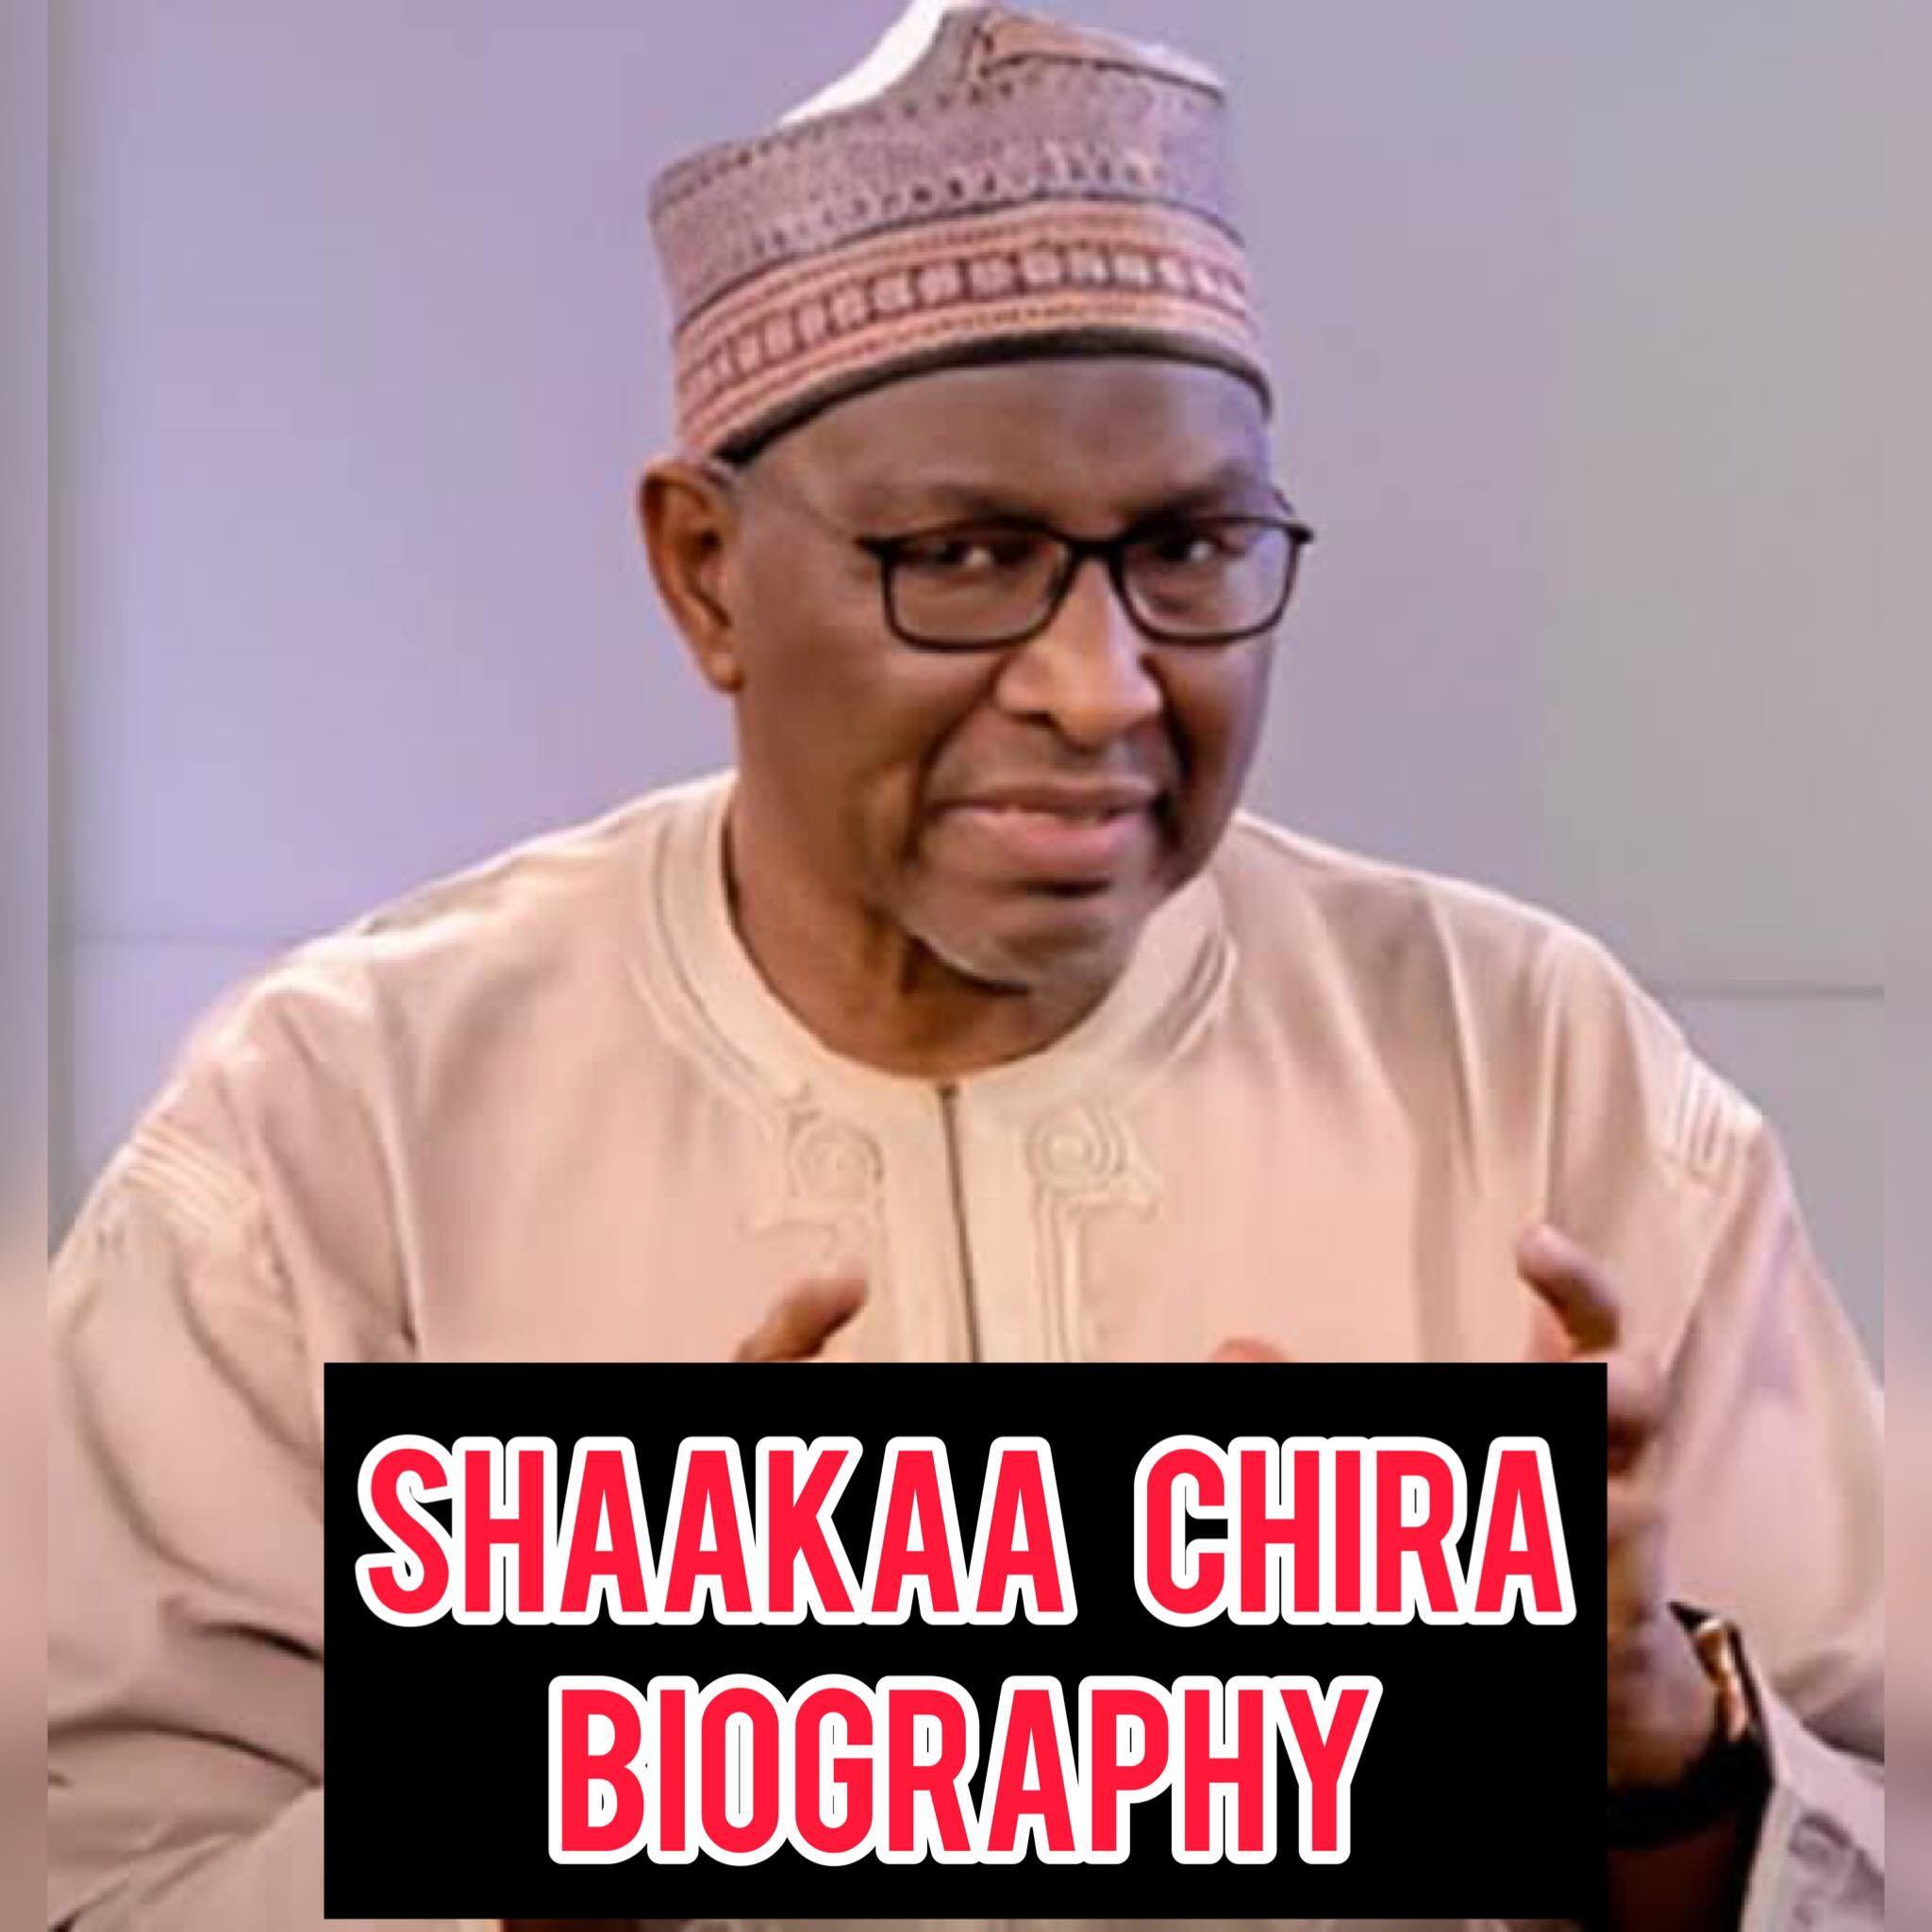 Shaakaa Chira Biography